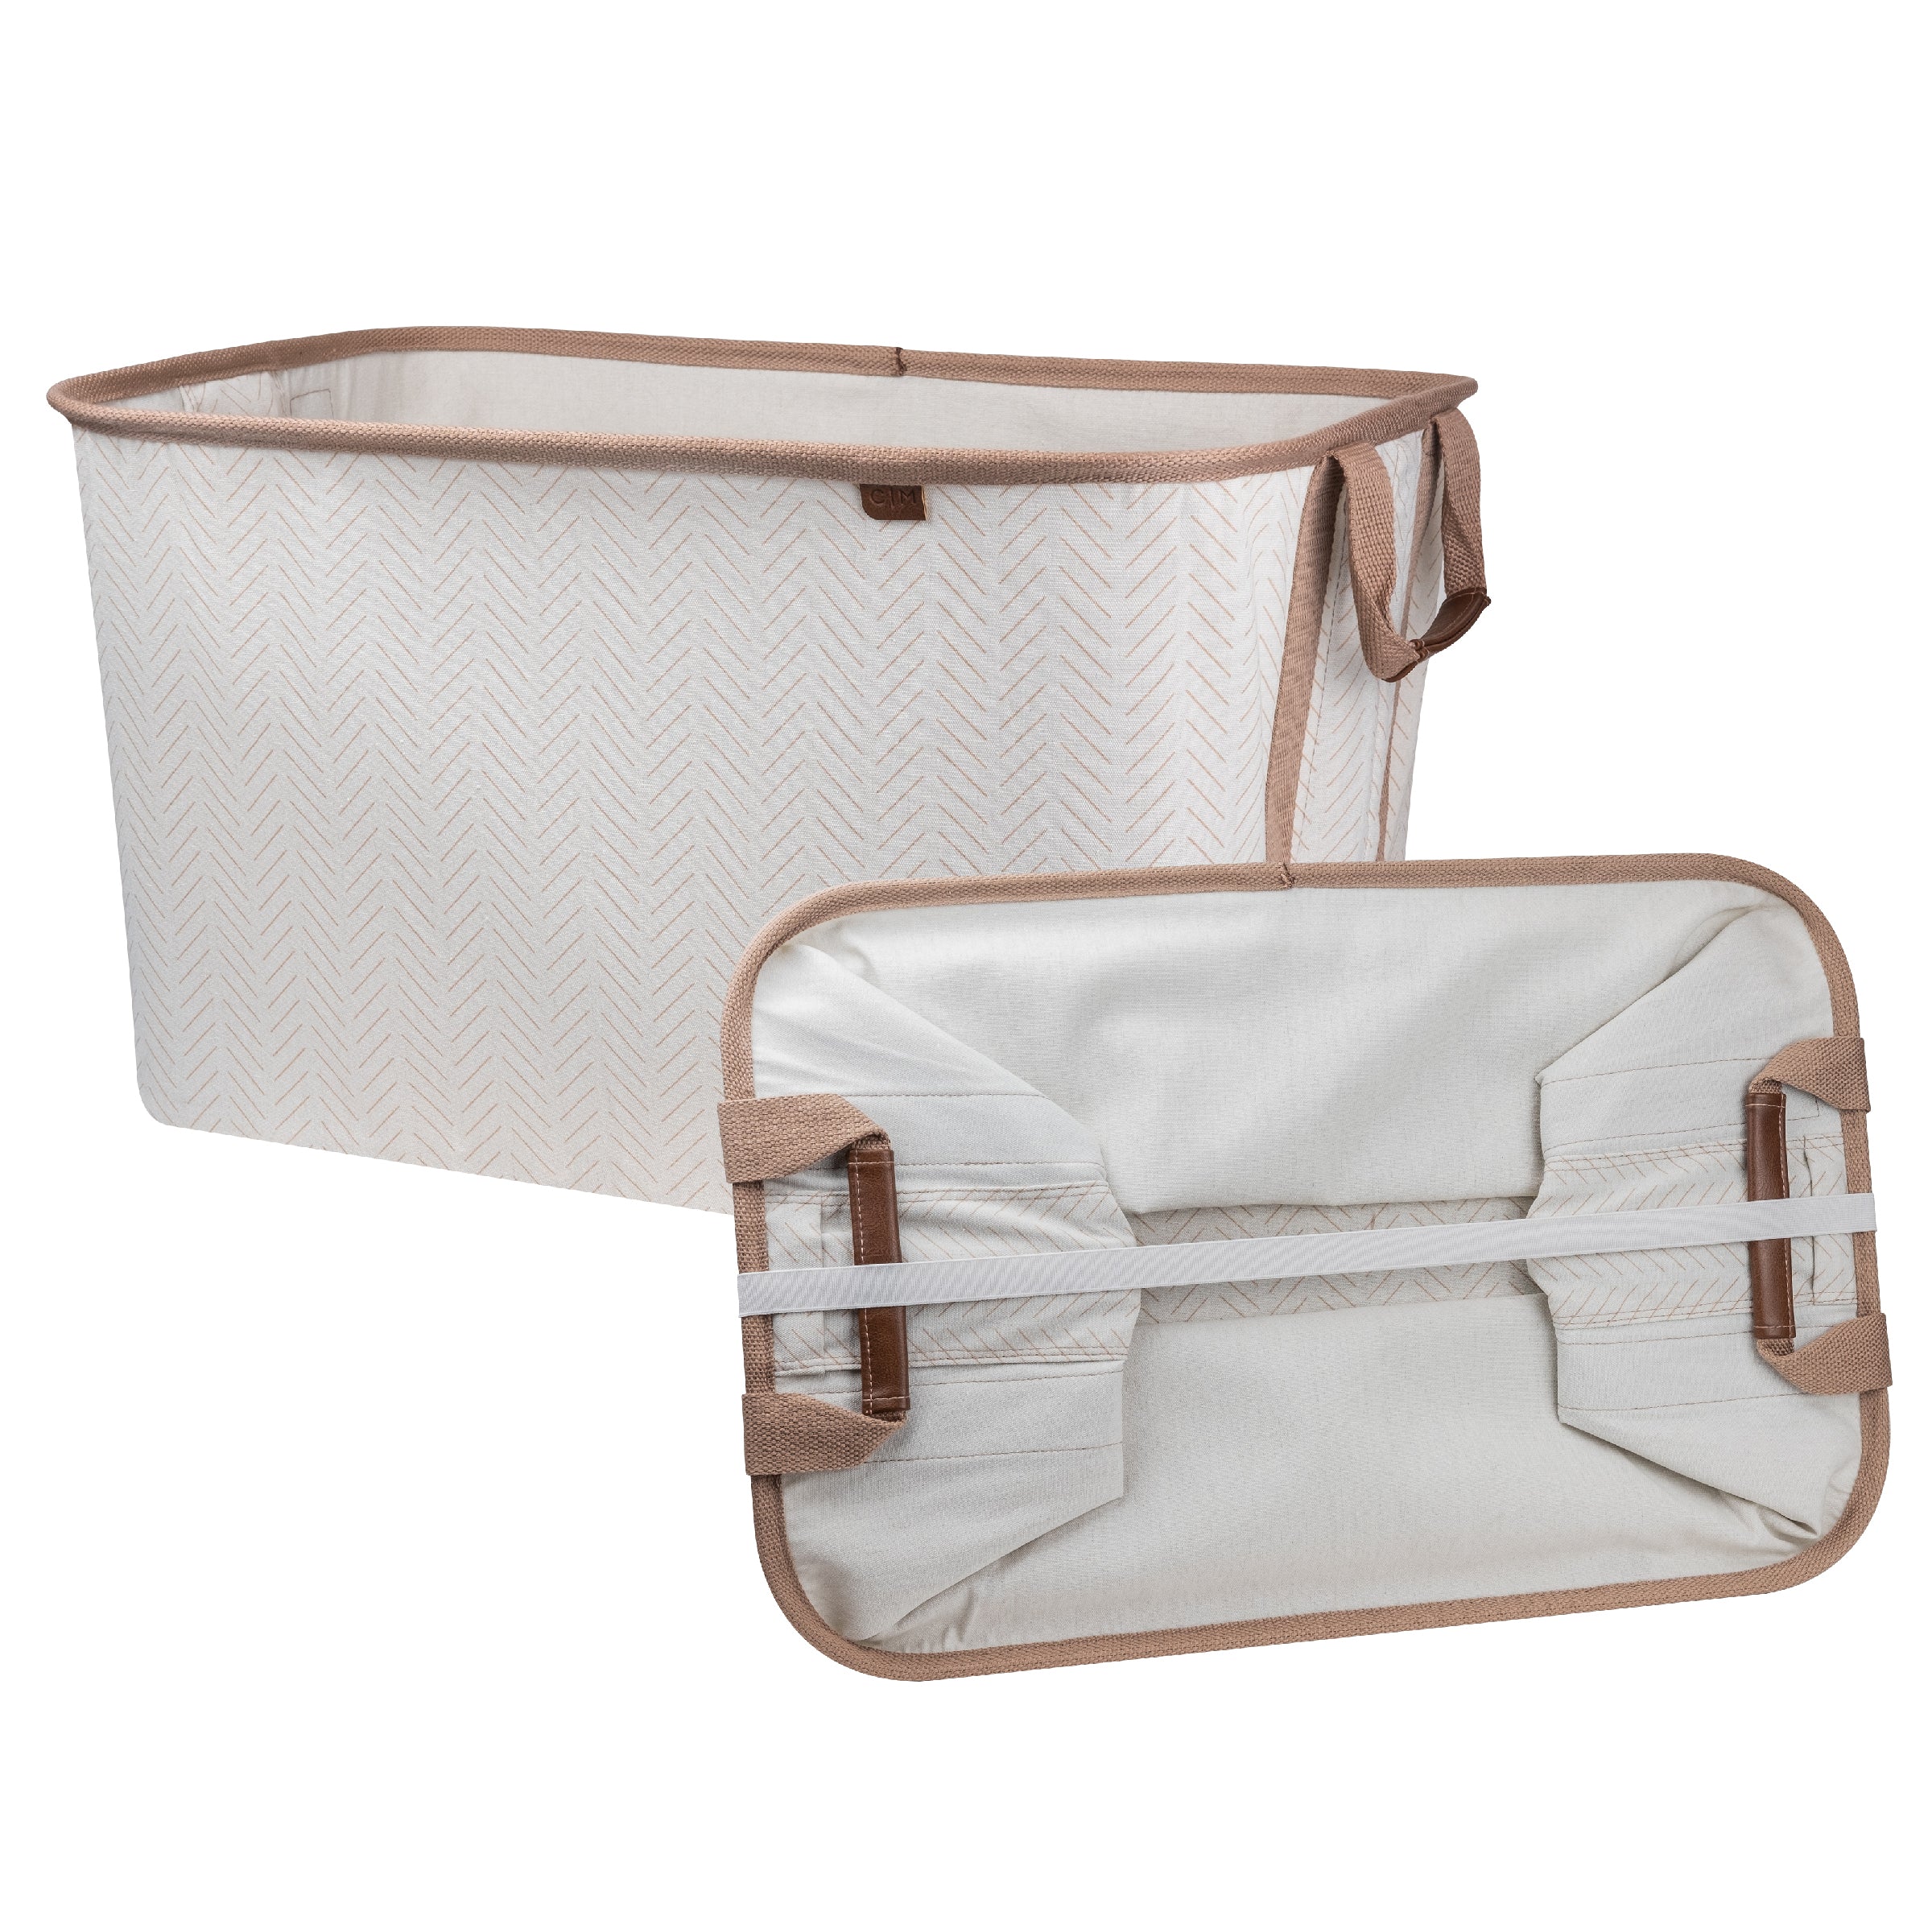 Big Storage Laundry Basket Large Foldable Clothes Hamper Bag with Handle  Washing